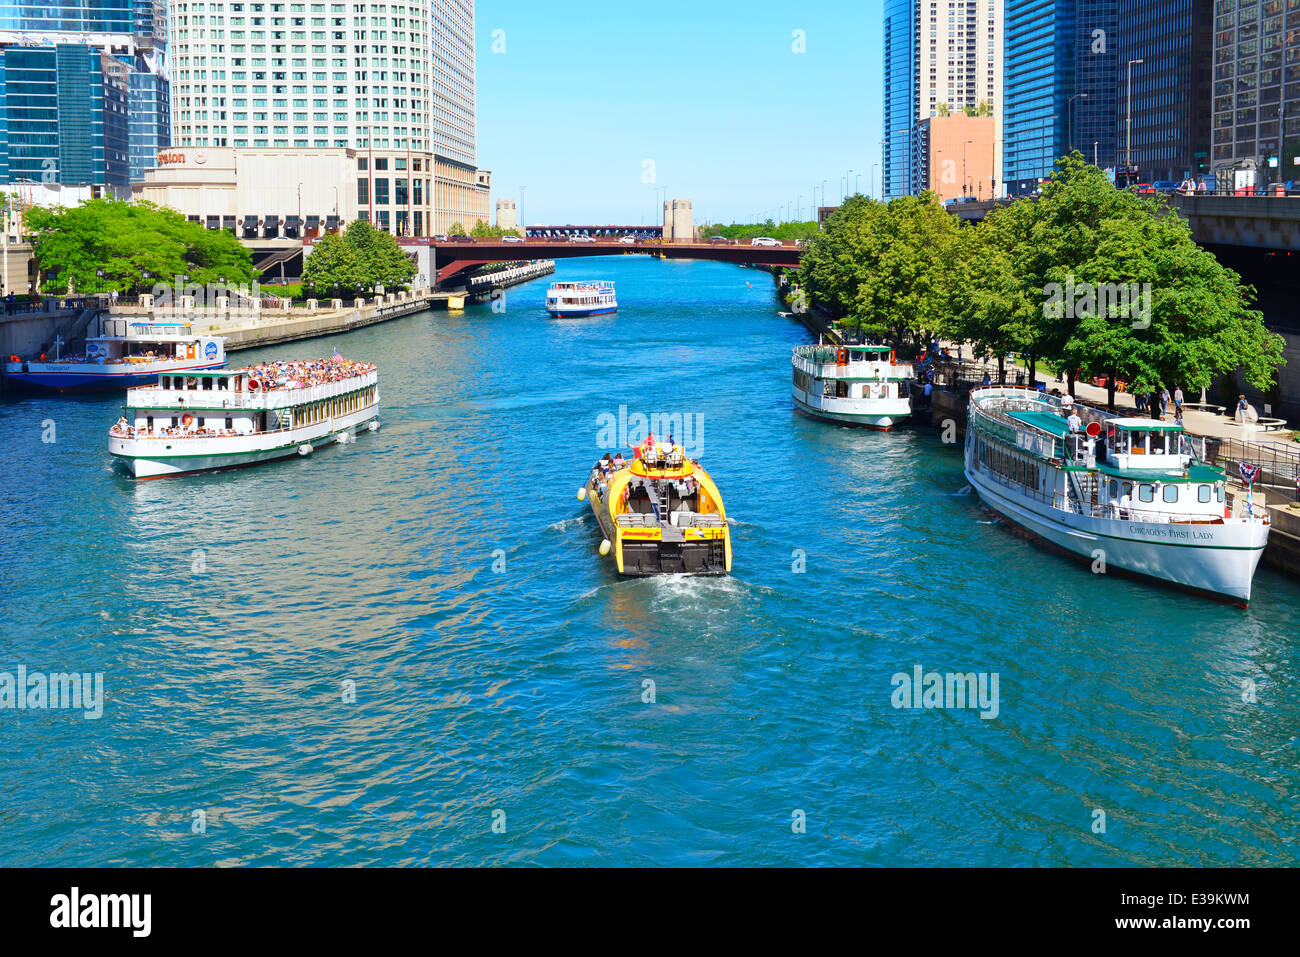 Chicago River Cruise, imbarcazione turistica,barche lungo il famoso Riverwalk di Chicago, Illinois, Stati Uniti d'America; Foto Stock